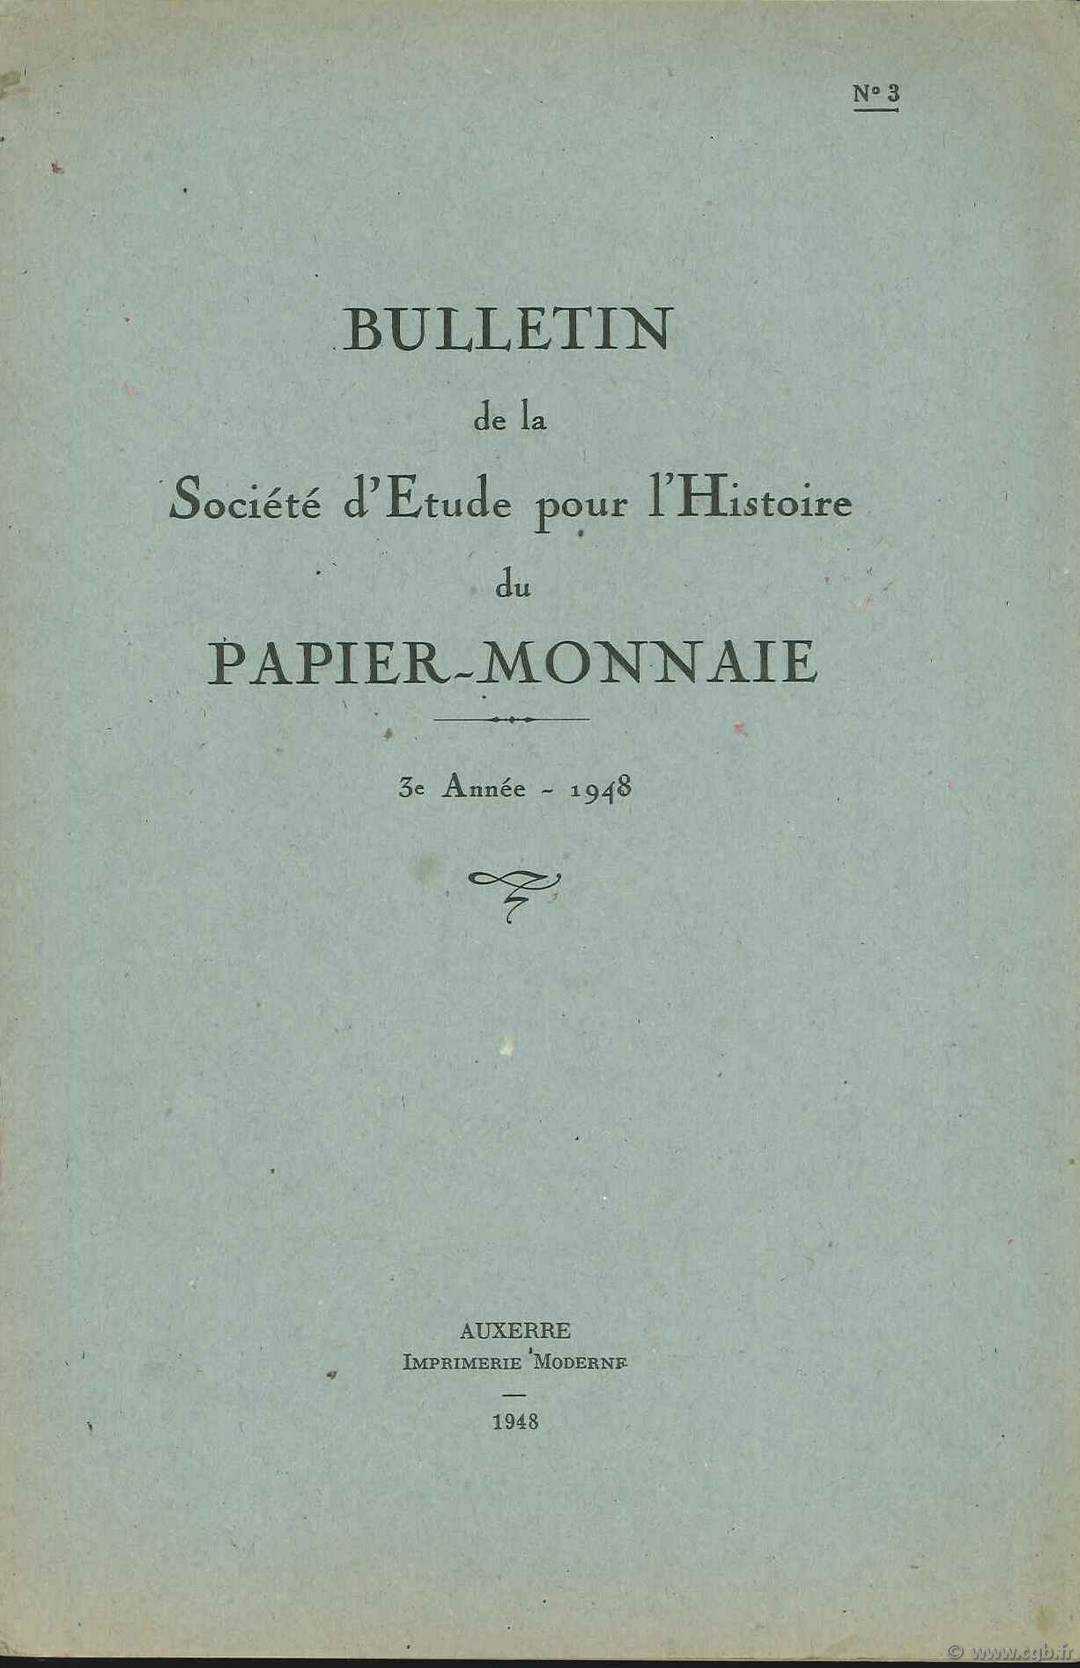 Bulletin de la Société d Etude pour l Histoire du Papier-Monnaie BLANCHET A., FORIEN J., GRISOT P., HABEREKORN R.,   LAFAURIE J., TESSIER G.